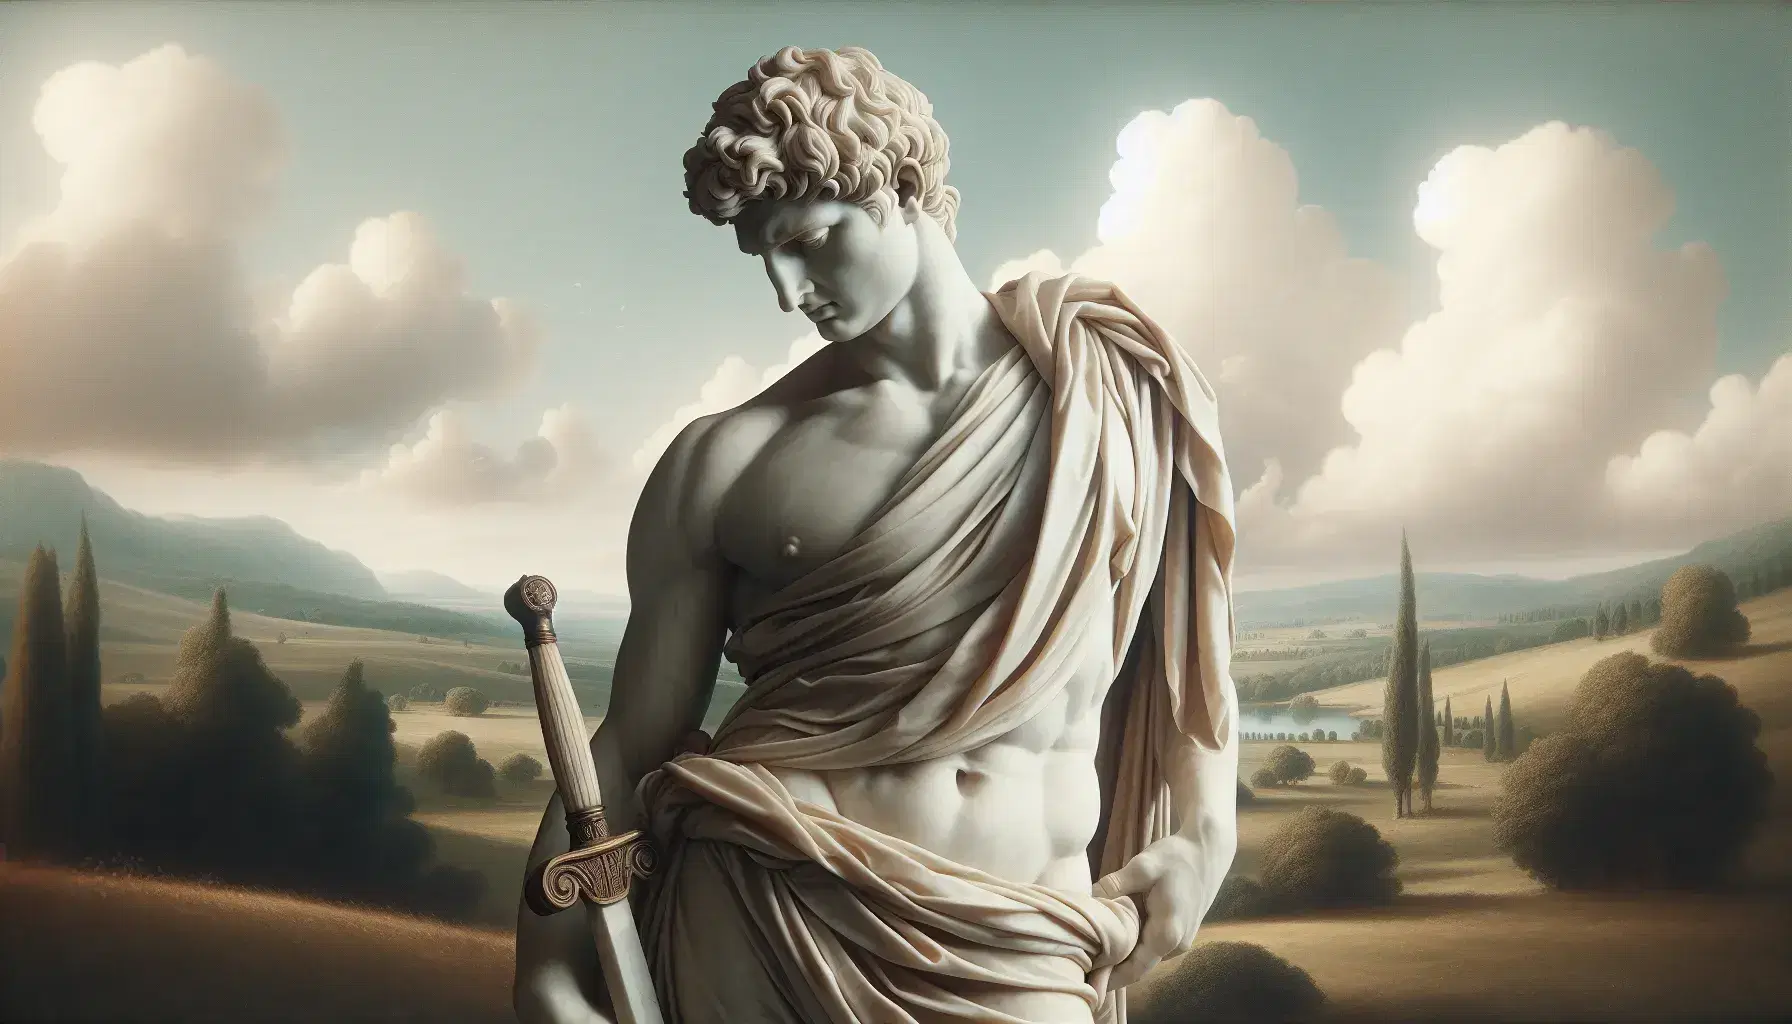 Statua in marmo bianco di figura storica romana in toga con sfondo paesaggio gallico e spada romana Gladius appoggiata.